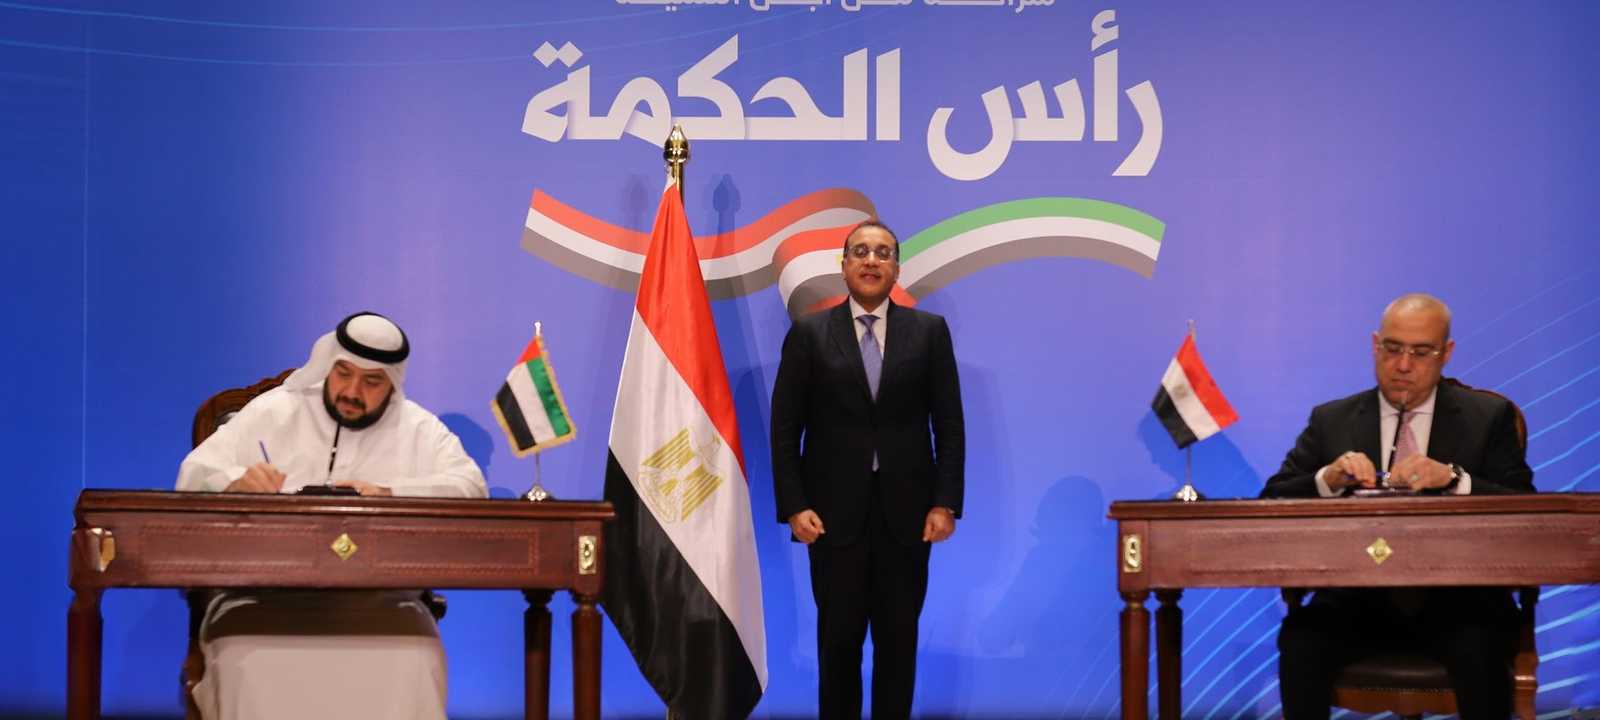 توقيع الاتفاق بين مصر والإمارات لتطوير "رأس الحكمة"